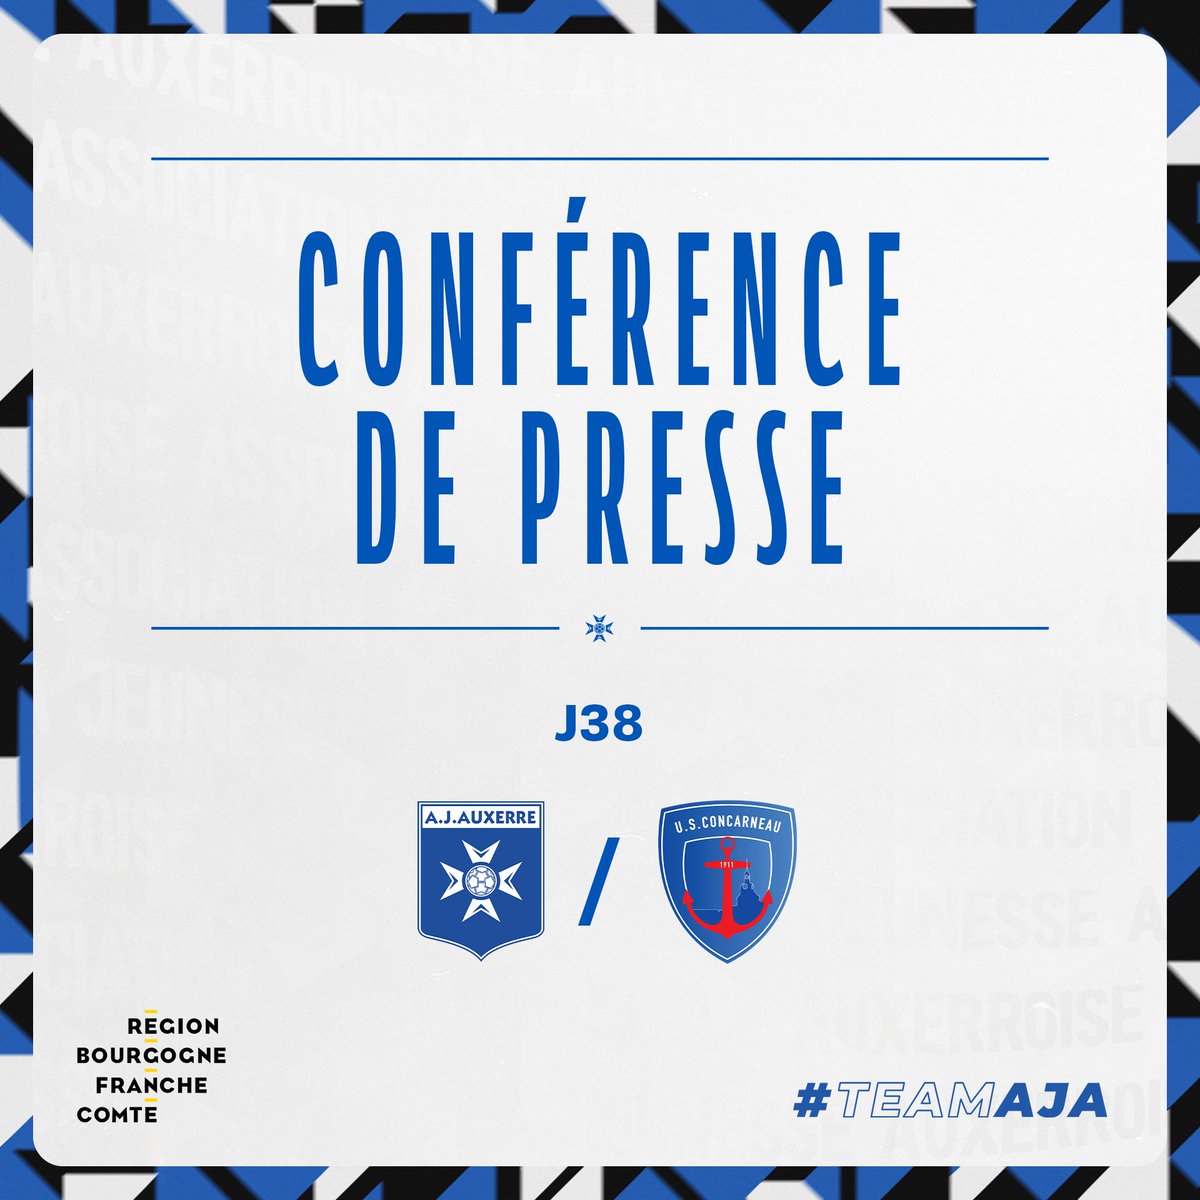 🎥 𝐉𝐨𝐮𝐫 𝐝𝐞 𝐜𝐨𝐧𝐟' 🎙️

La dernière conférence de presse de la saison, avant #AJAUSC, aura lieu ce jeudi à 15h45 avec Christophe Pélissier et Gauthier Hein.

Elle sera à suivre en live-tweet et à revoir sur YouTube.

#TeamAJA